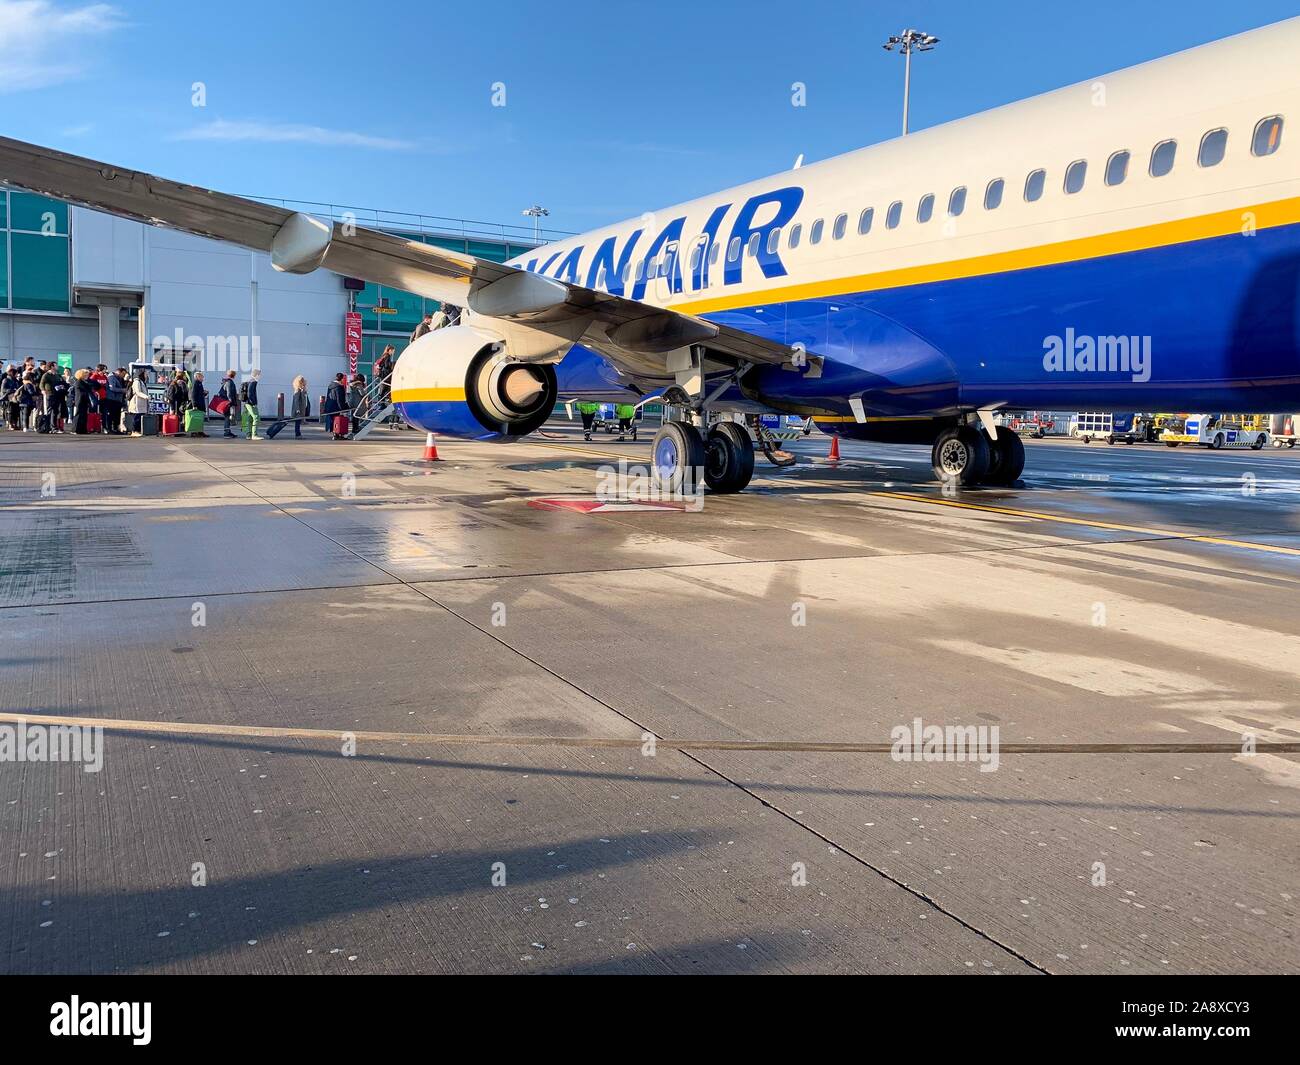 London, England - November 9th, 2019: Warteschlange von Menschen warten auf ein Flugzeug Ryanair am Flughafen Stansted in einem kalten sonnigen Tag zu erhalten Stockfoto